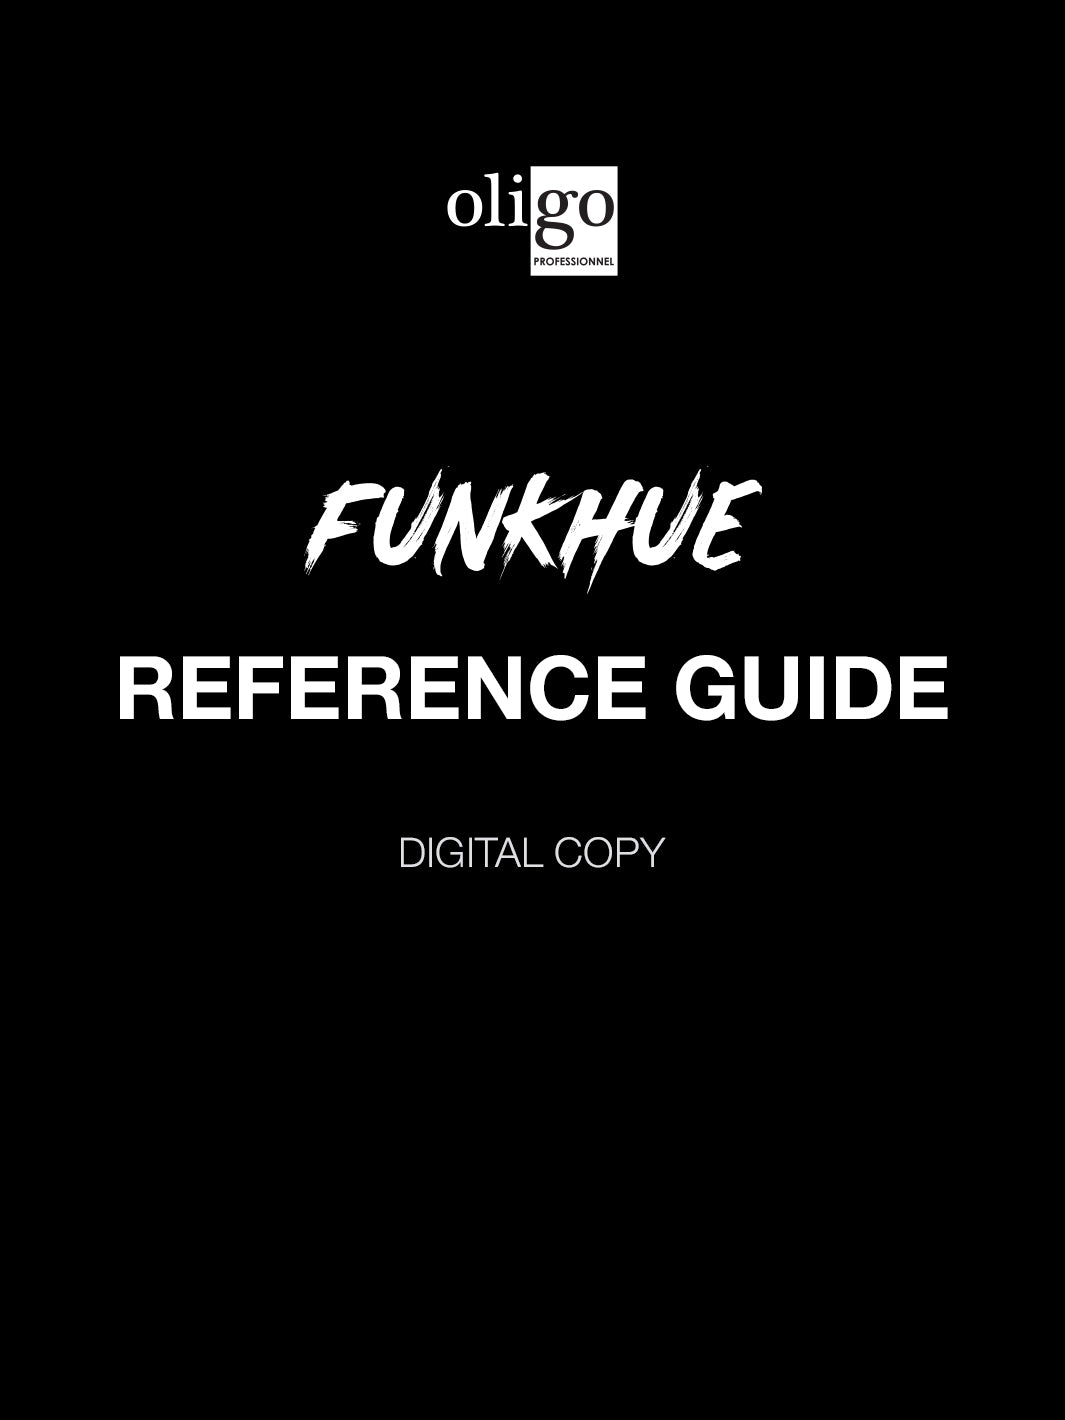 Oligo FunkHue Reference Guide (digital copy)